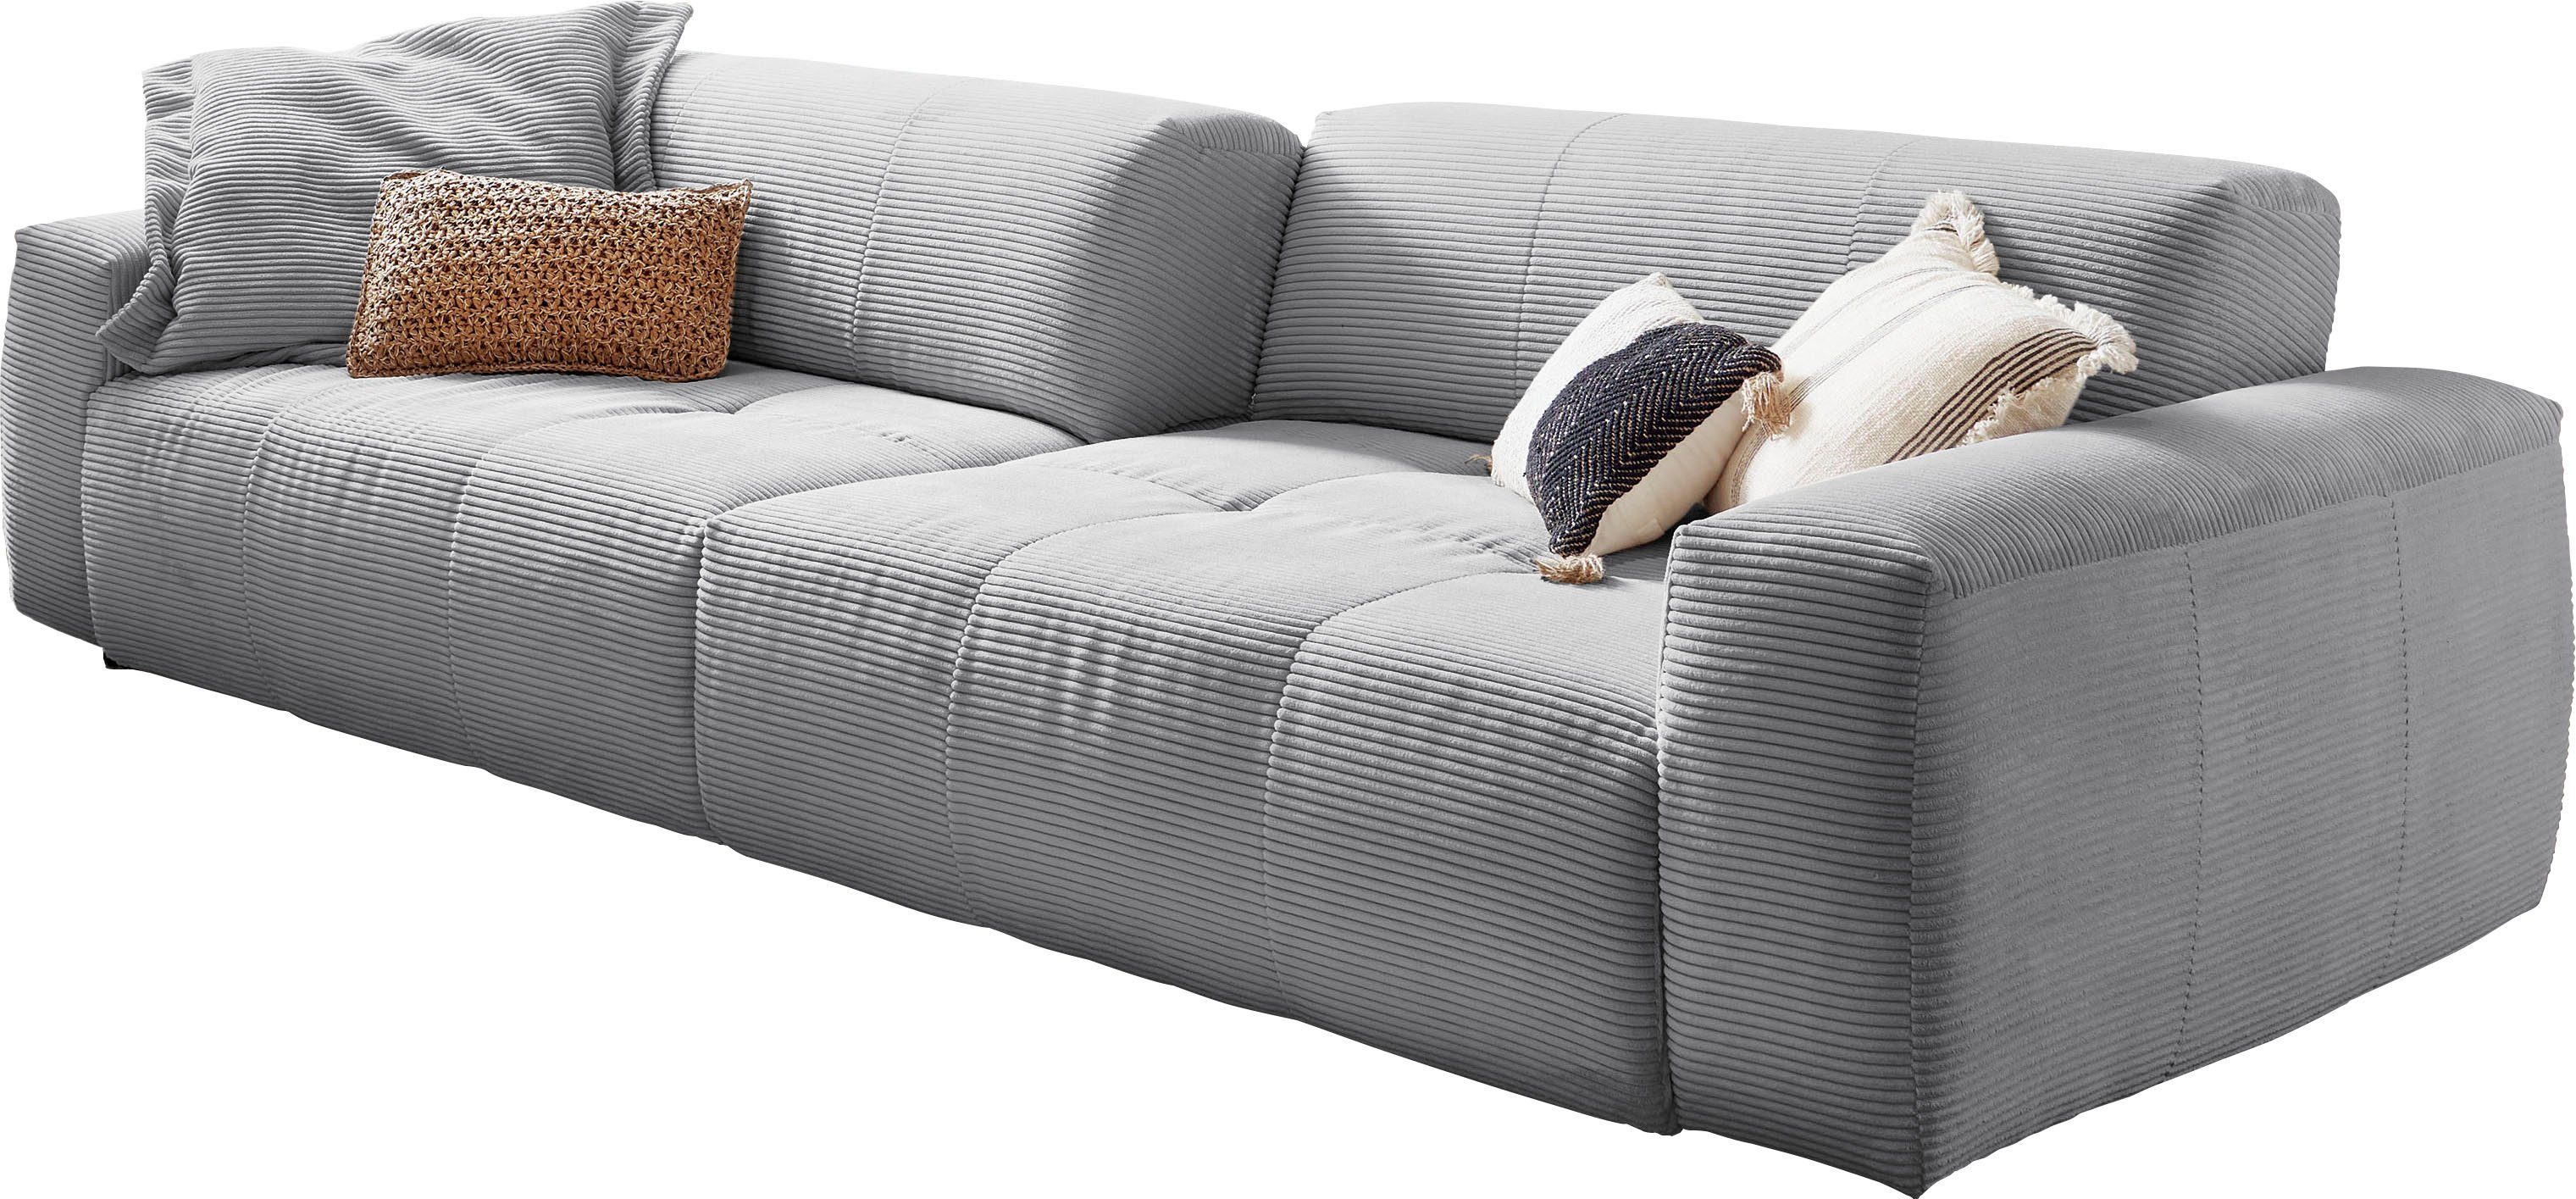 3C Candy Big-Sofa Yoshy, Zwei Sitztiefen durch verstellbare Rückenlehne, Bezug in Cord grau